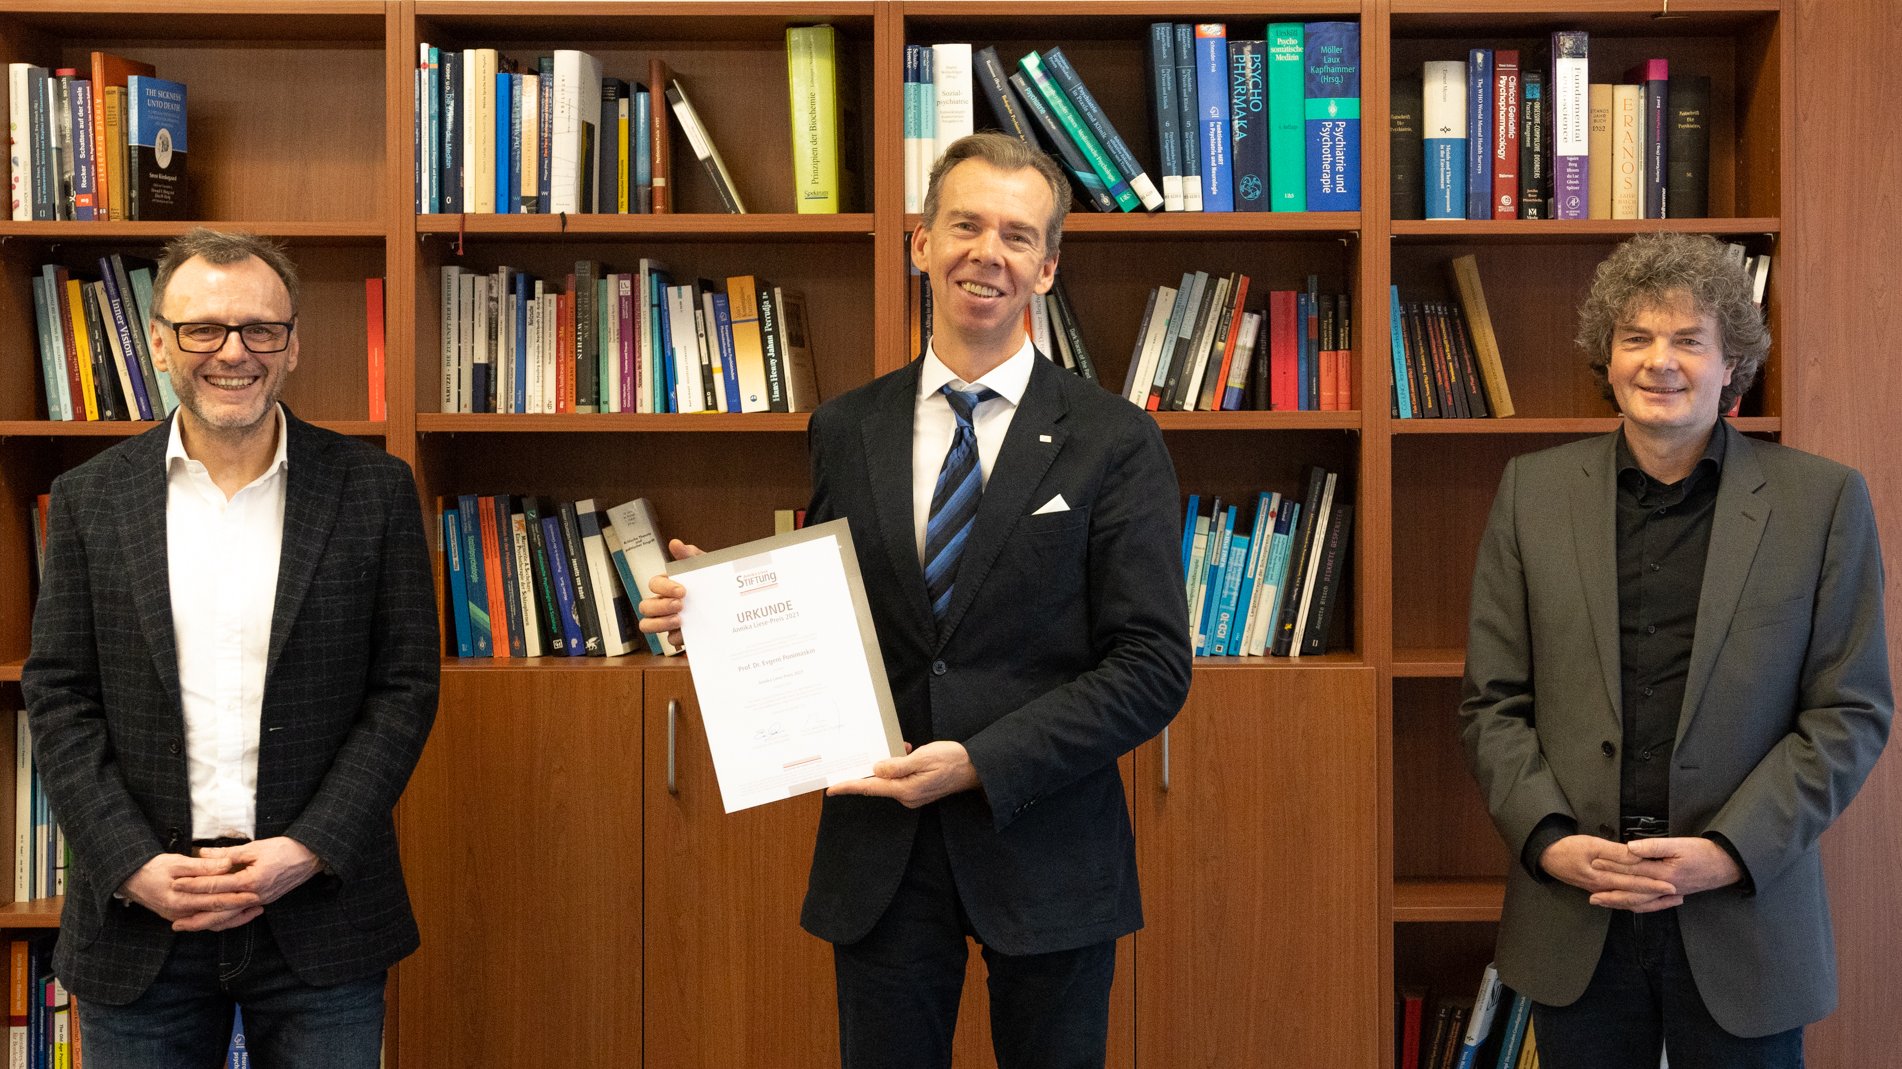 In der Bildmitte hält Preisträger Professor Ponimaskin seine Urkunde in die Kamera. Linkst steht Professor Kai G. Kahl, rechts Dr. Eckhard Schenke.